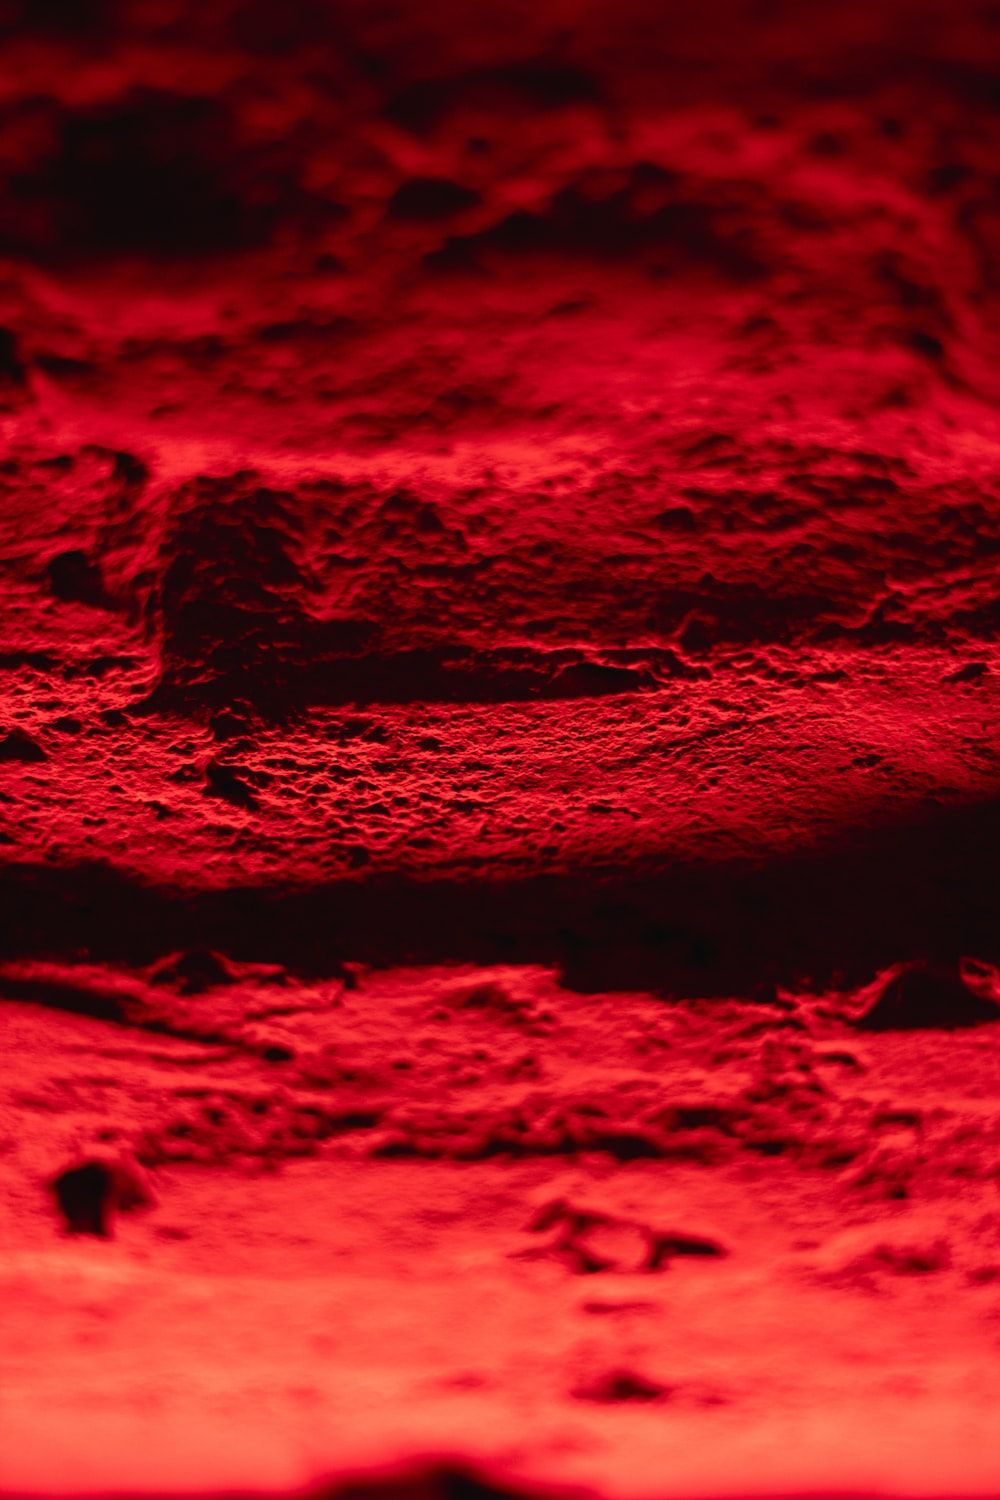  Rot Hintergrundbild 1000x1500. Foto zum Thema Rotes textil in der nahaufnahme